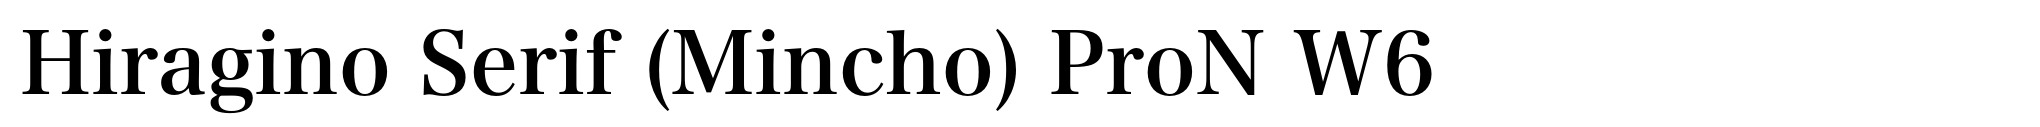 Hiragino Serif (Mincho) ProN W6 image